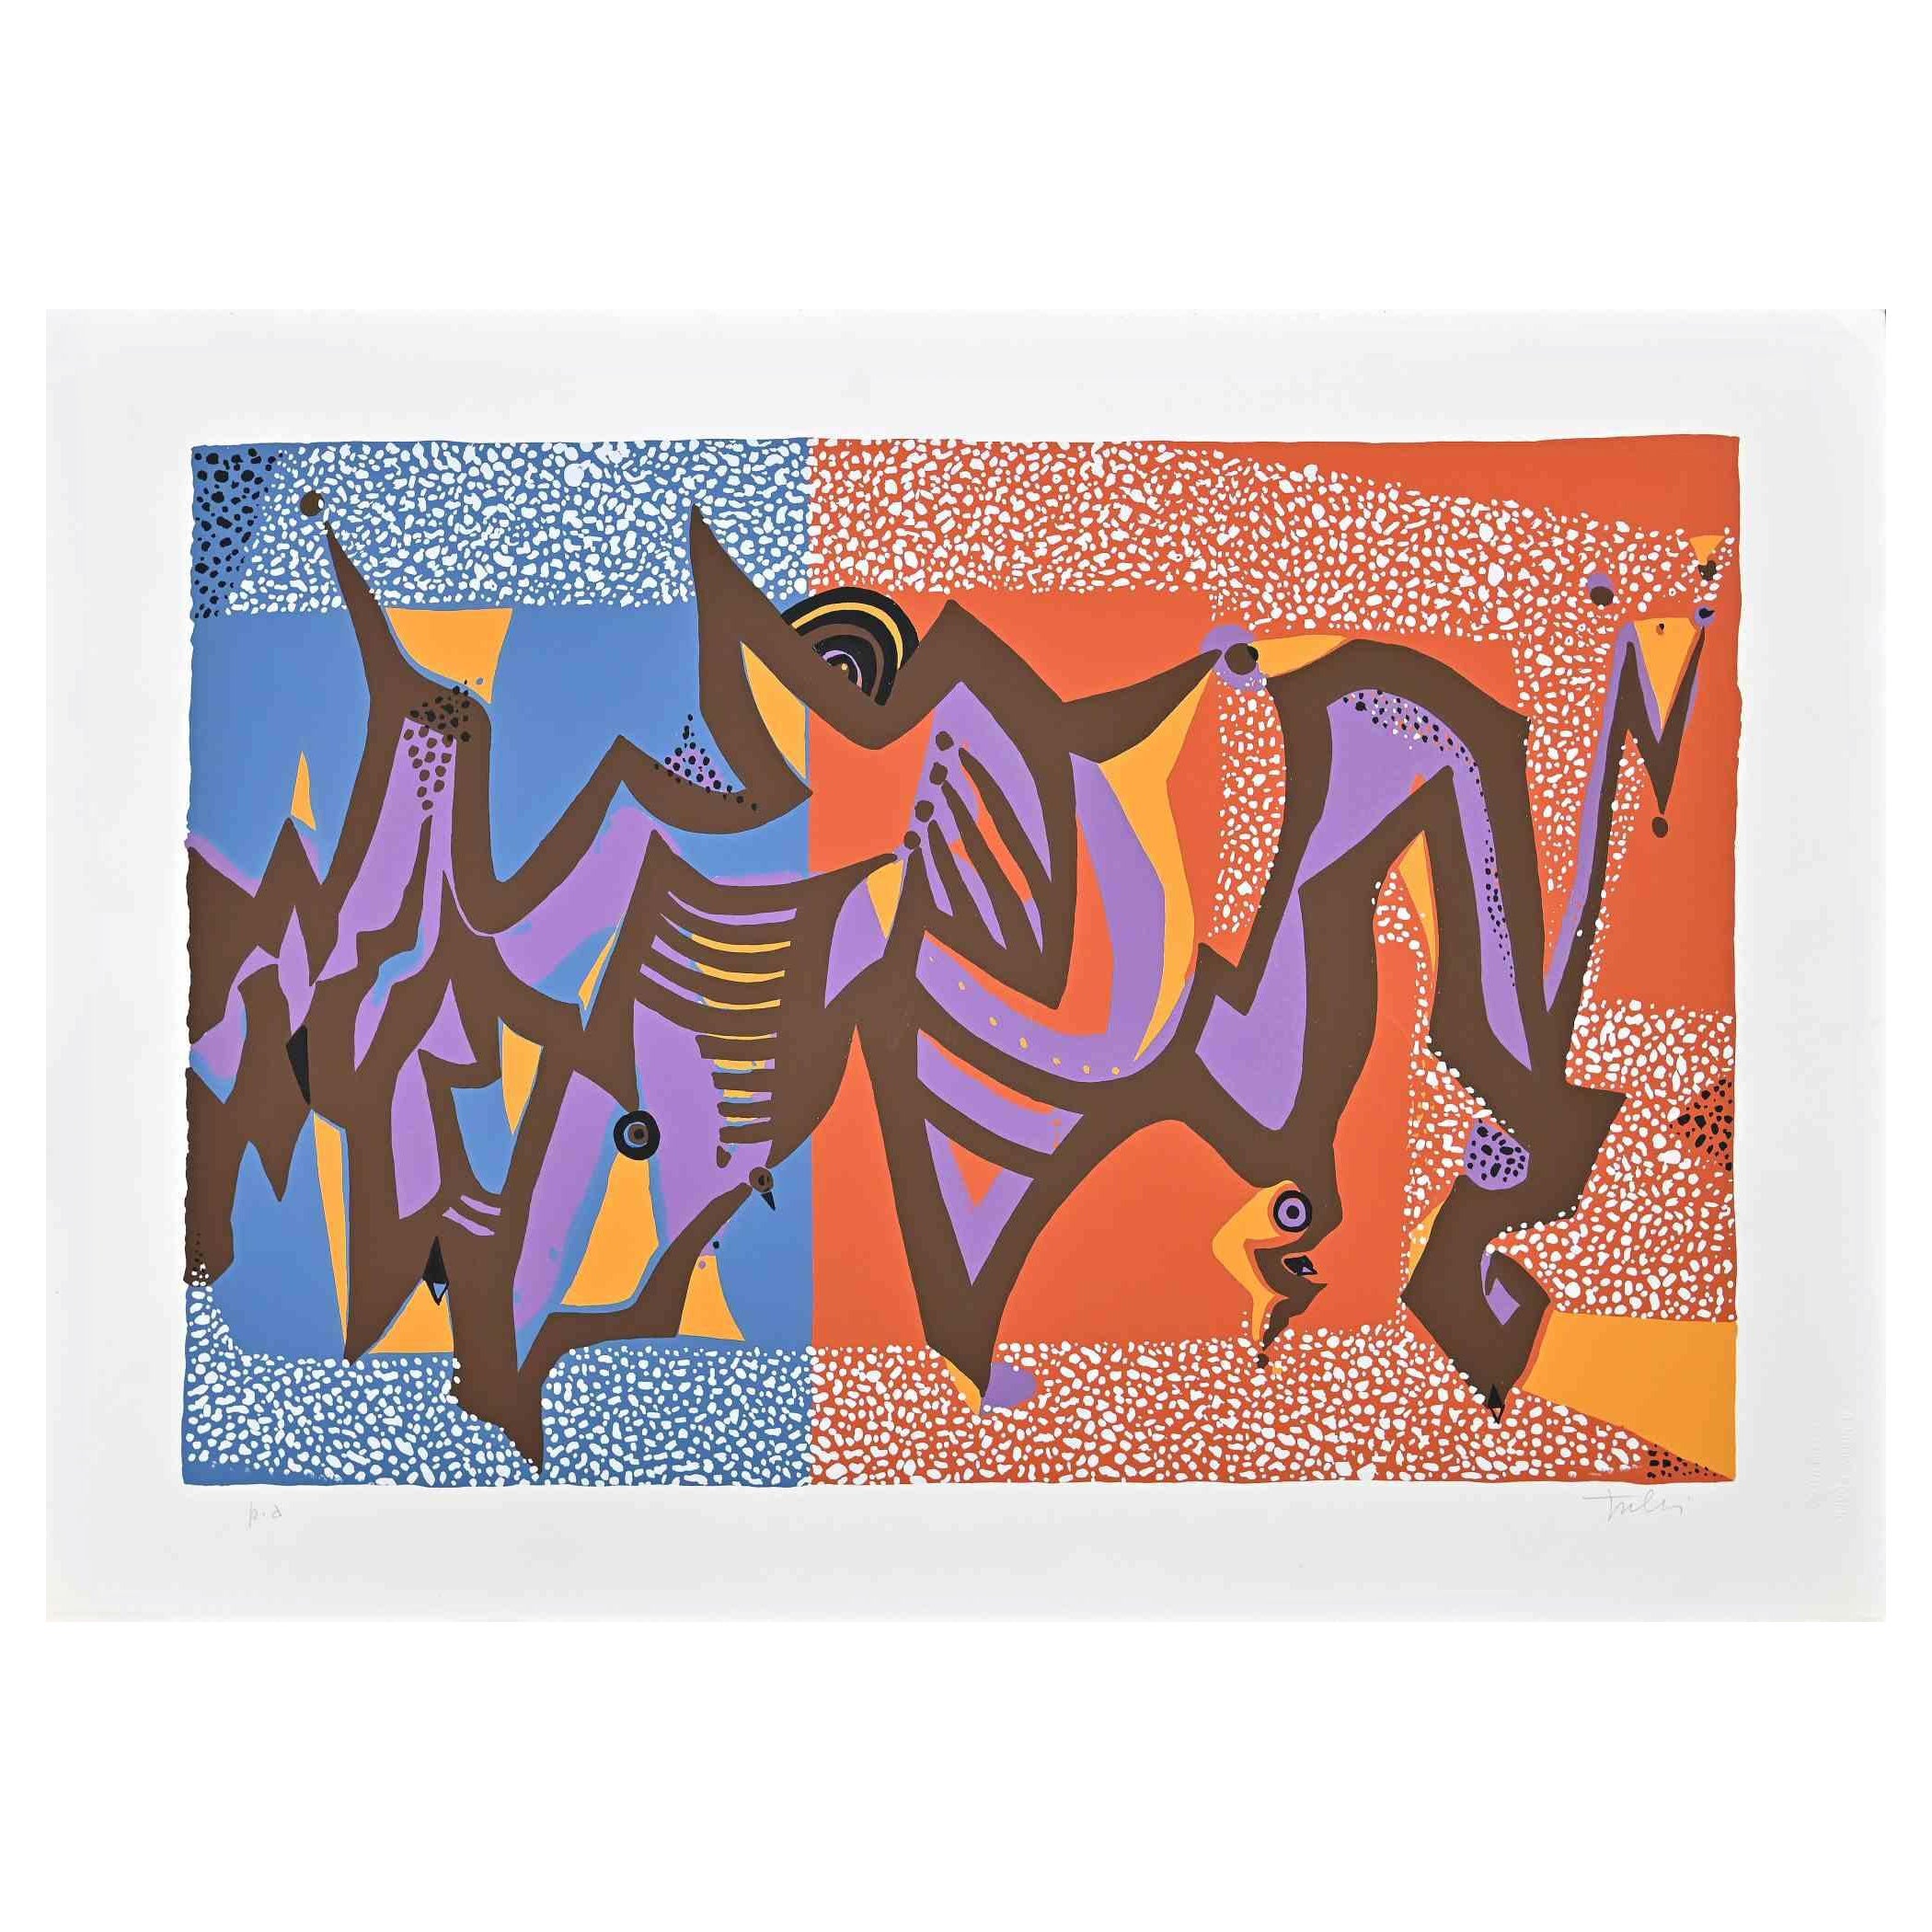 Composition abstraite est une sérigraphie colorée sur papier, réalisée dans les années 1970 par l'artiste italien Wladimiro Tulli.
Signé à la main en bas à droite.

Preuve d'artiste.

Une belle œuvre d'art représentant une composition abstraite à